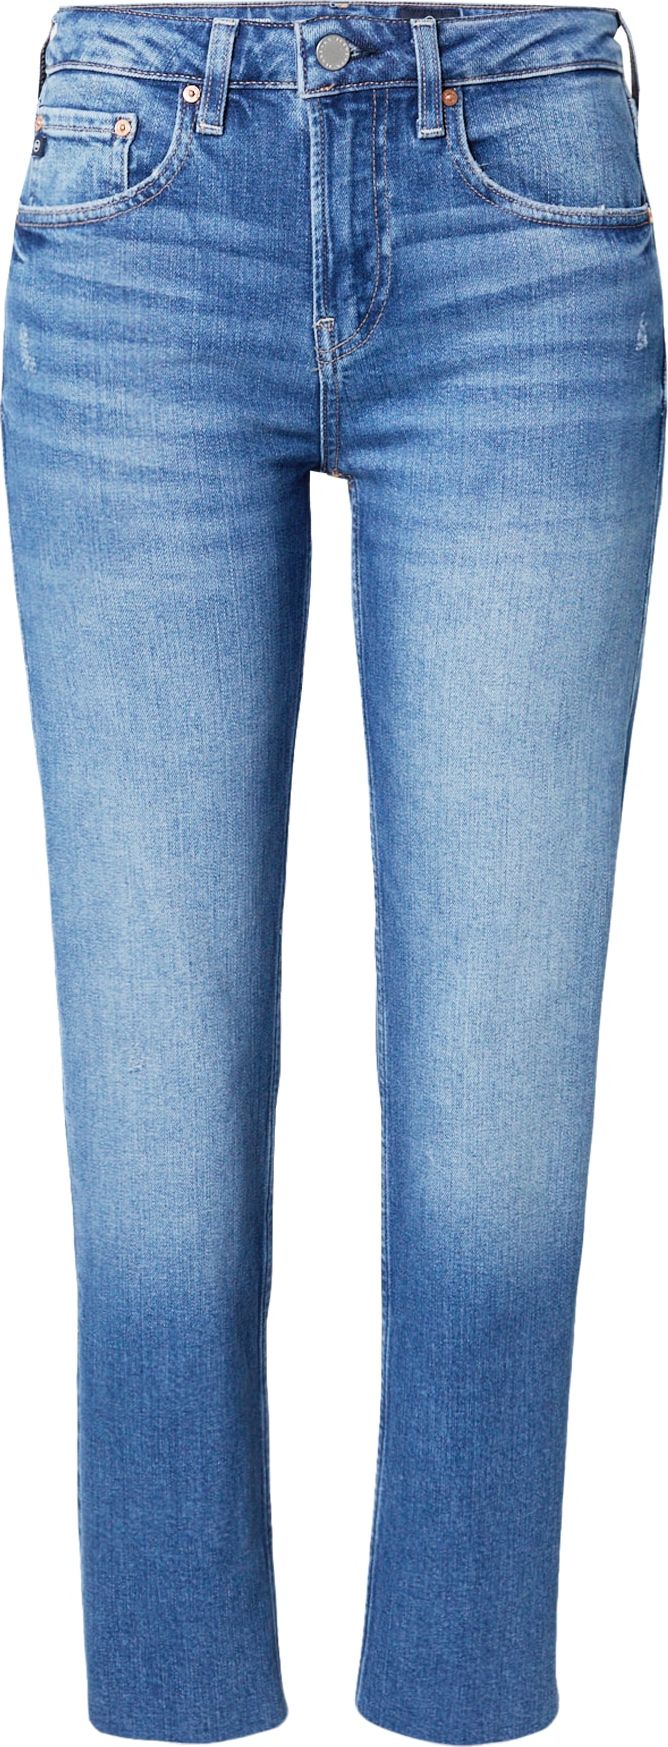 Džíny 'GIRLFRIEND' ag jeans modrá džínovina